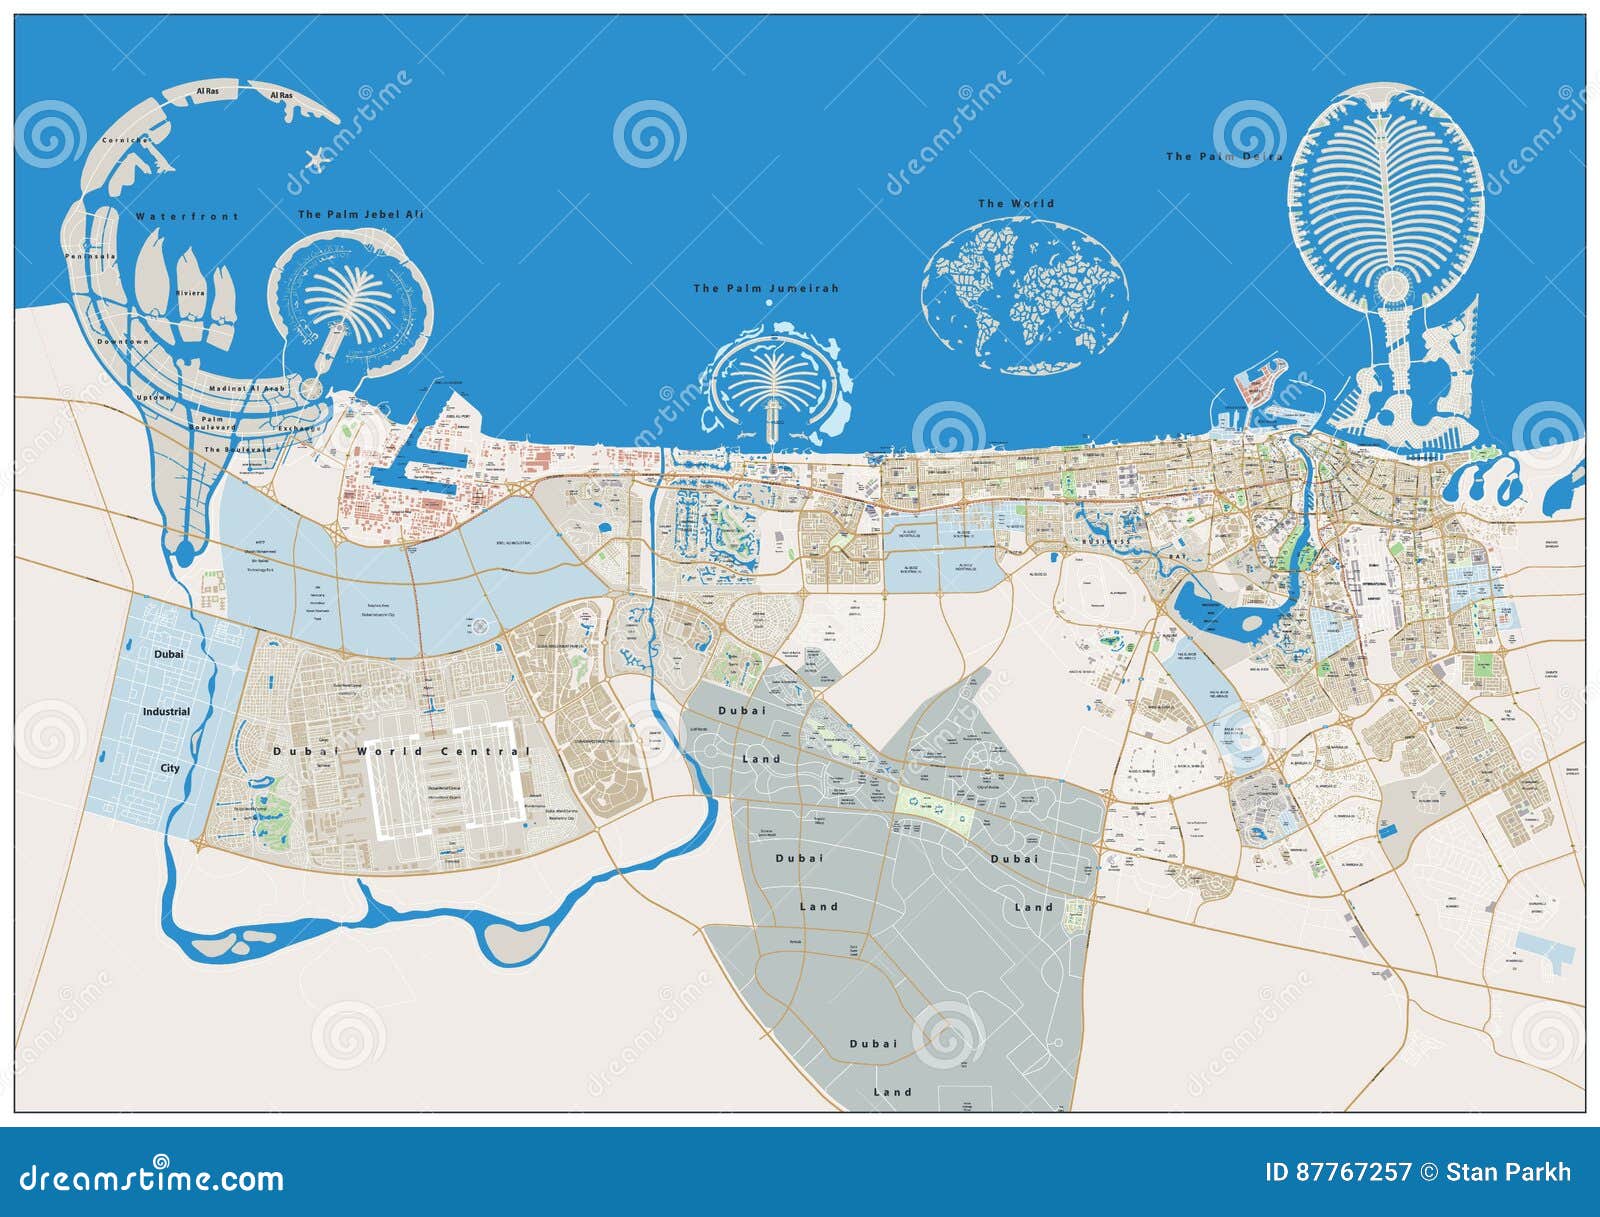 迪拜城市规划模型设计-总体规划模型-深圳市昊景模型有限公司